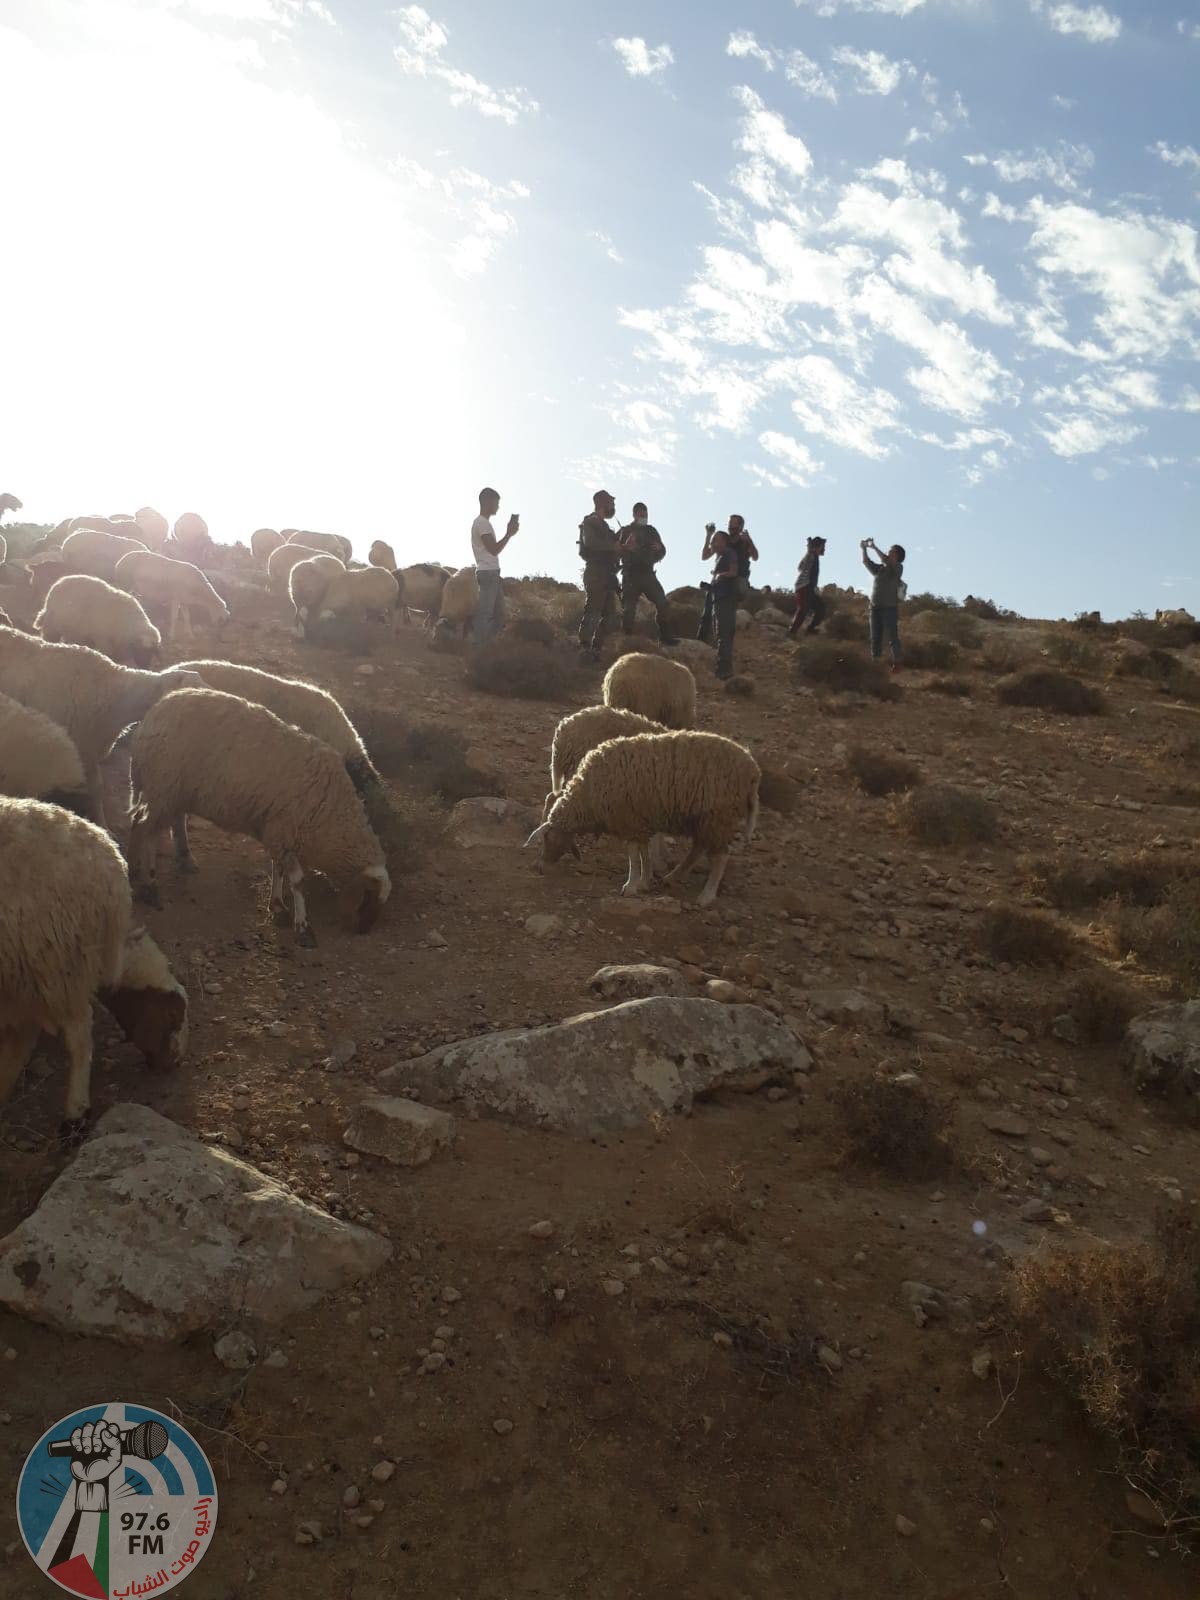 مستوطنون يعتدون على رعاة الماشية في يطا